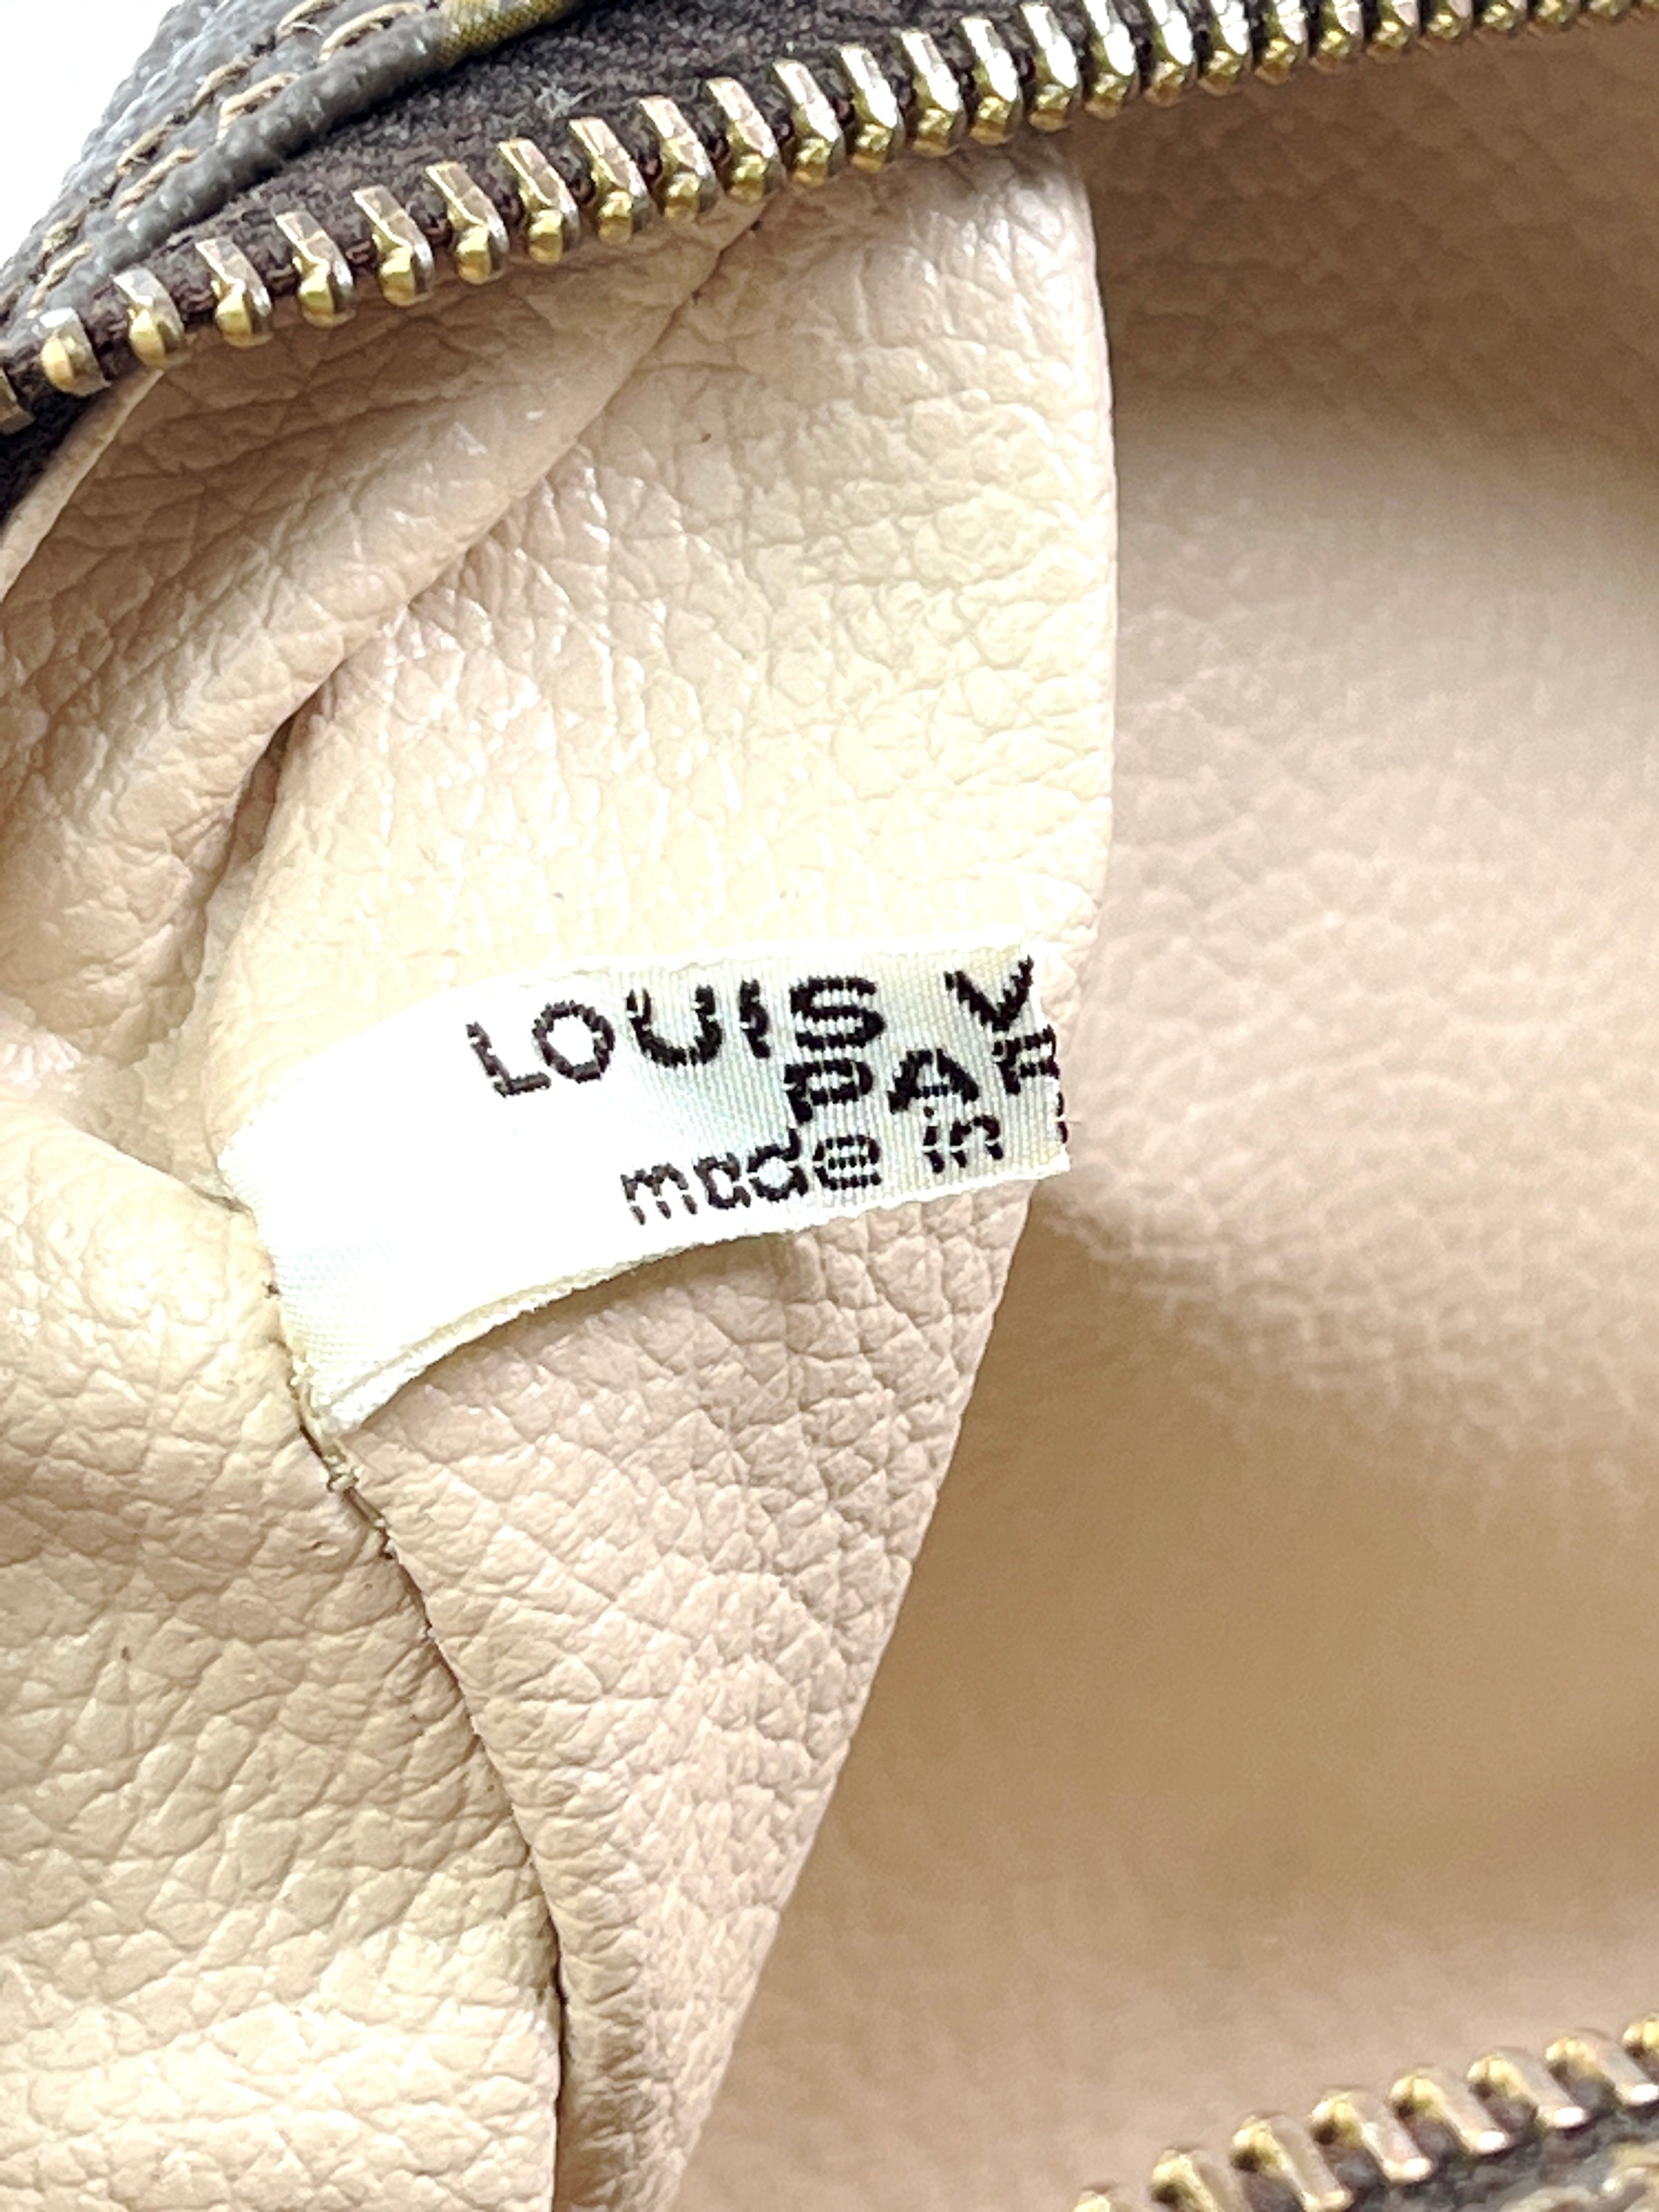 Louis Vuitton Trousse Toilette 28 Cosmetic Pouch Bag 